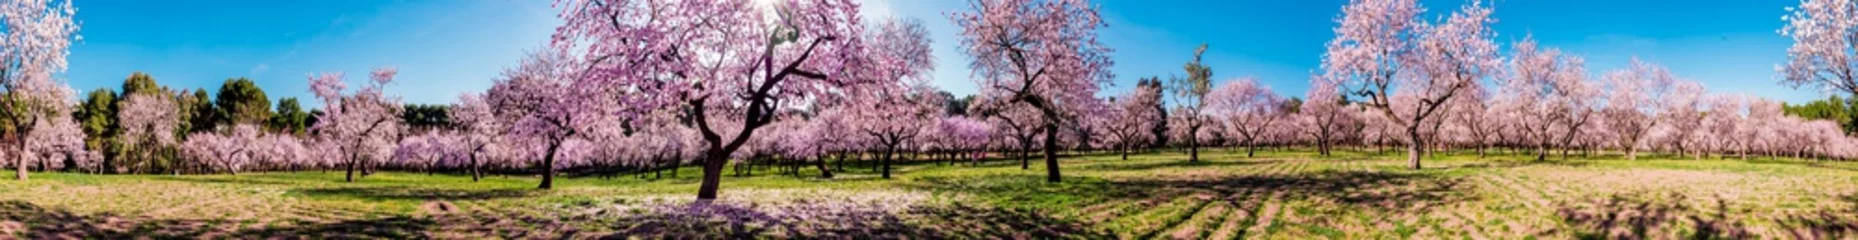 Fotobehang Pink alleys of blooming with flowers almond trees in a park in Madrid, Spain spring © Vivvi Smak